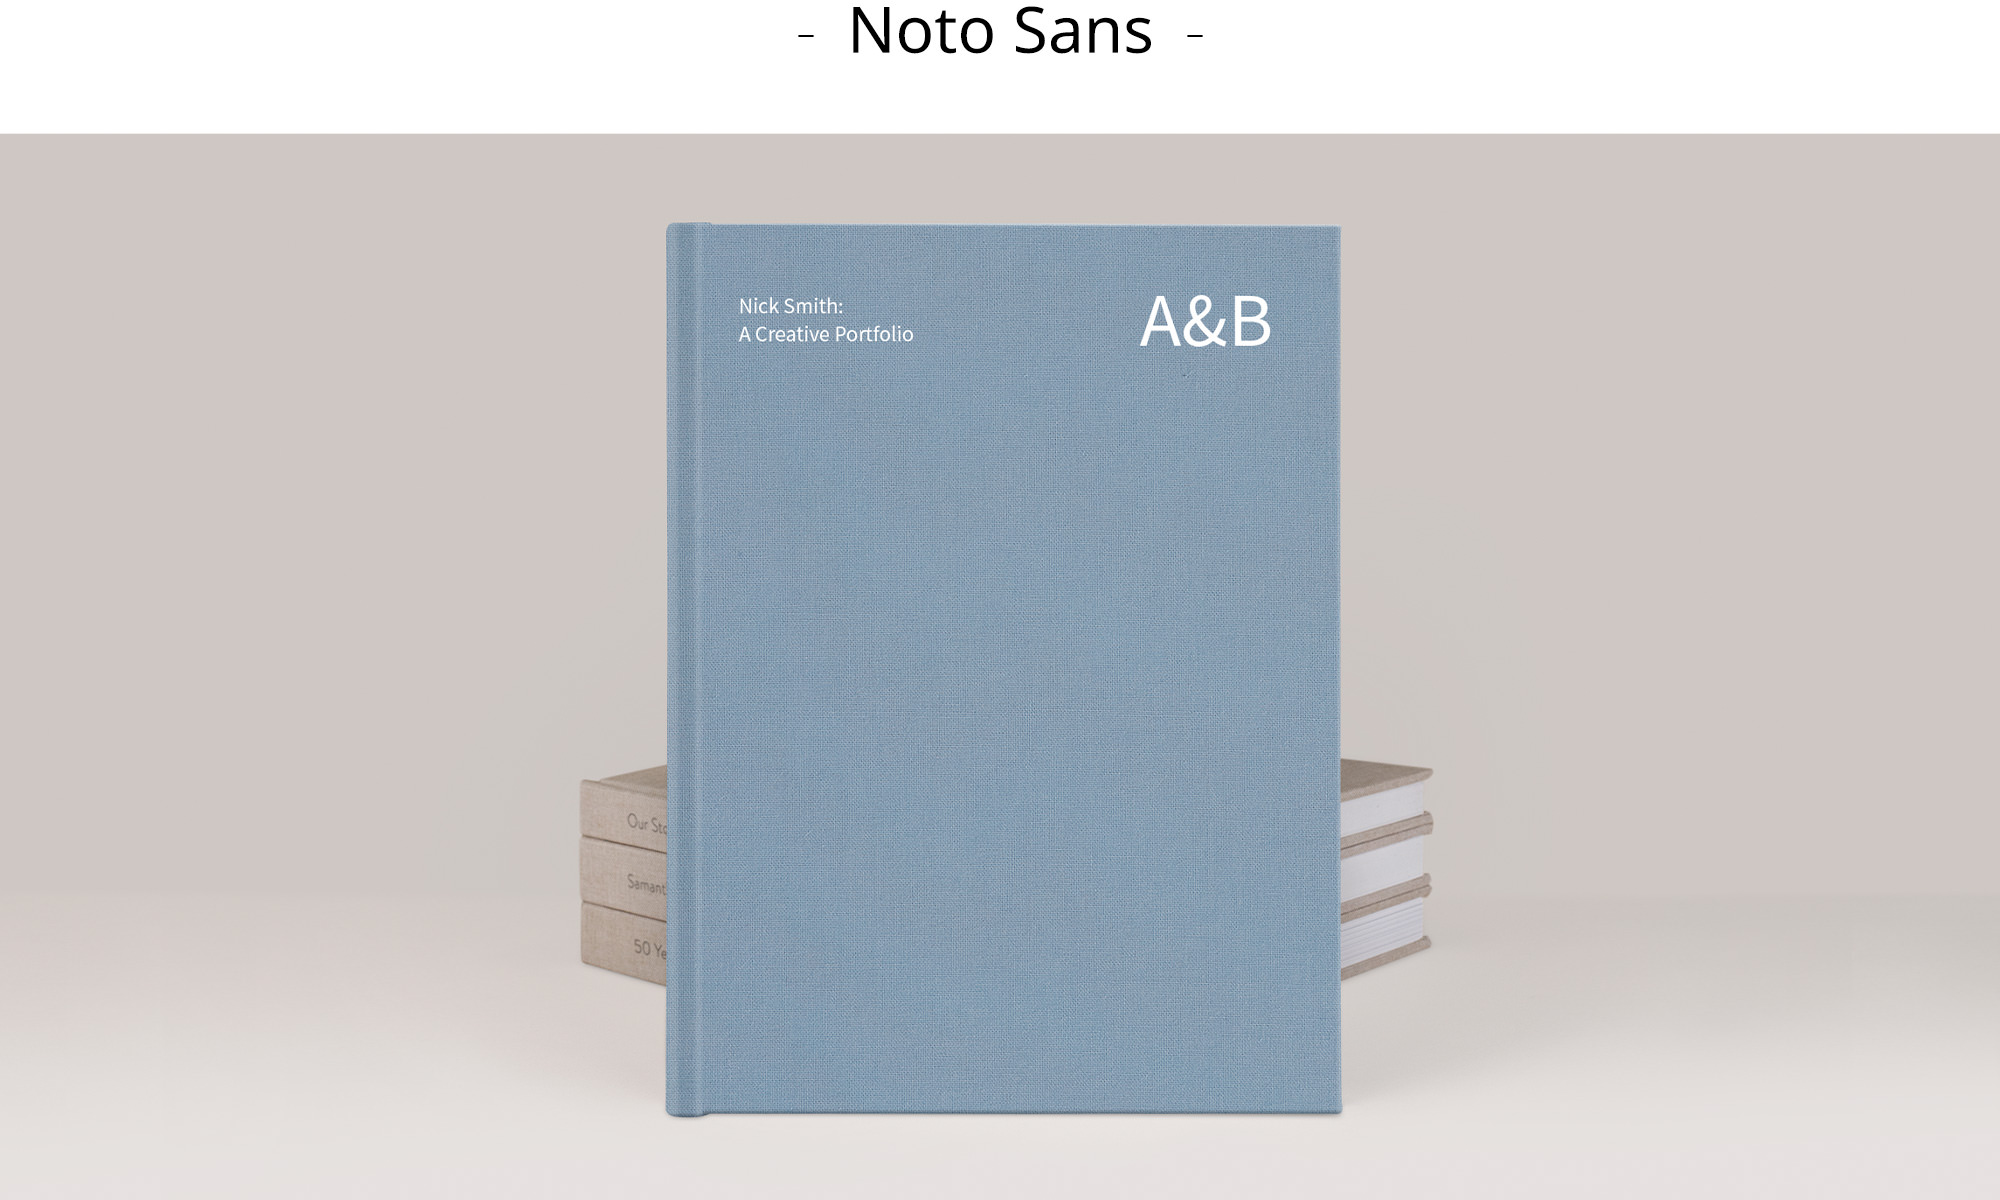 Premium Photo Book with Noto Sans font title